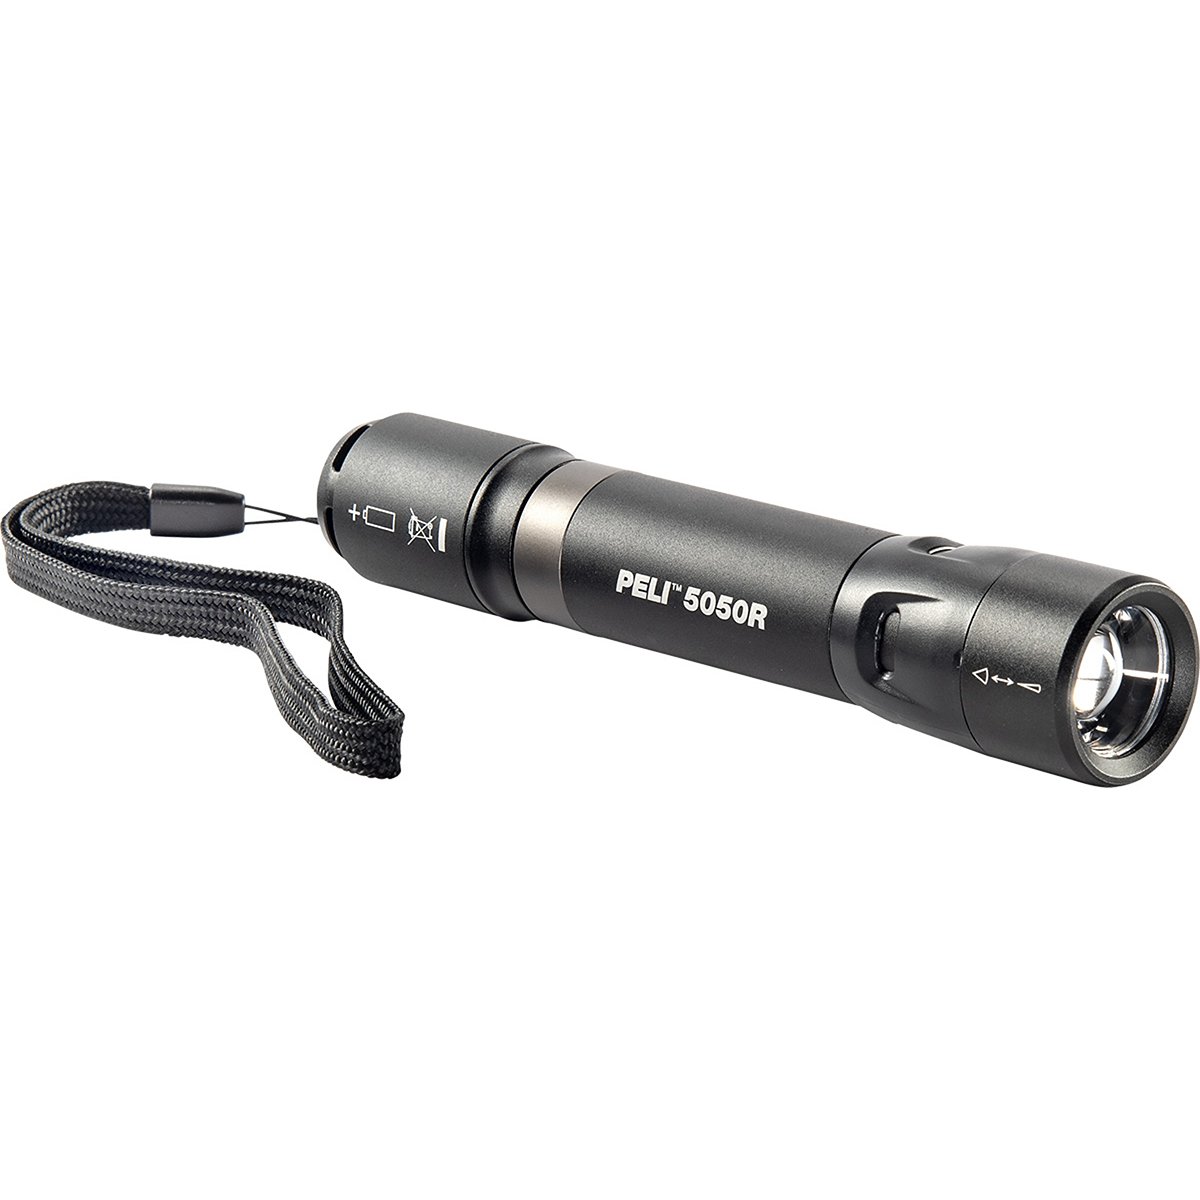 Тактический аккумуляторный фонарь Pelican™ 5050R с регулируемым лучом, черный